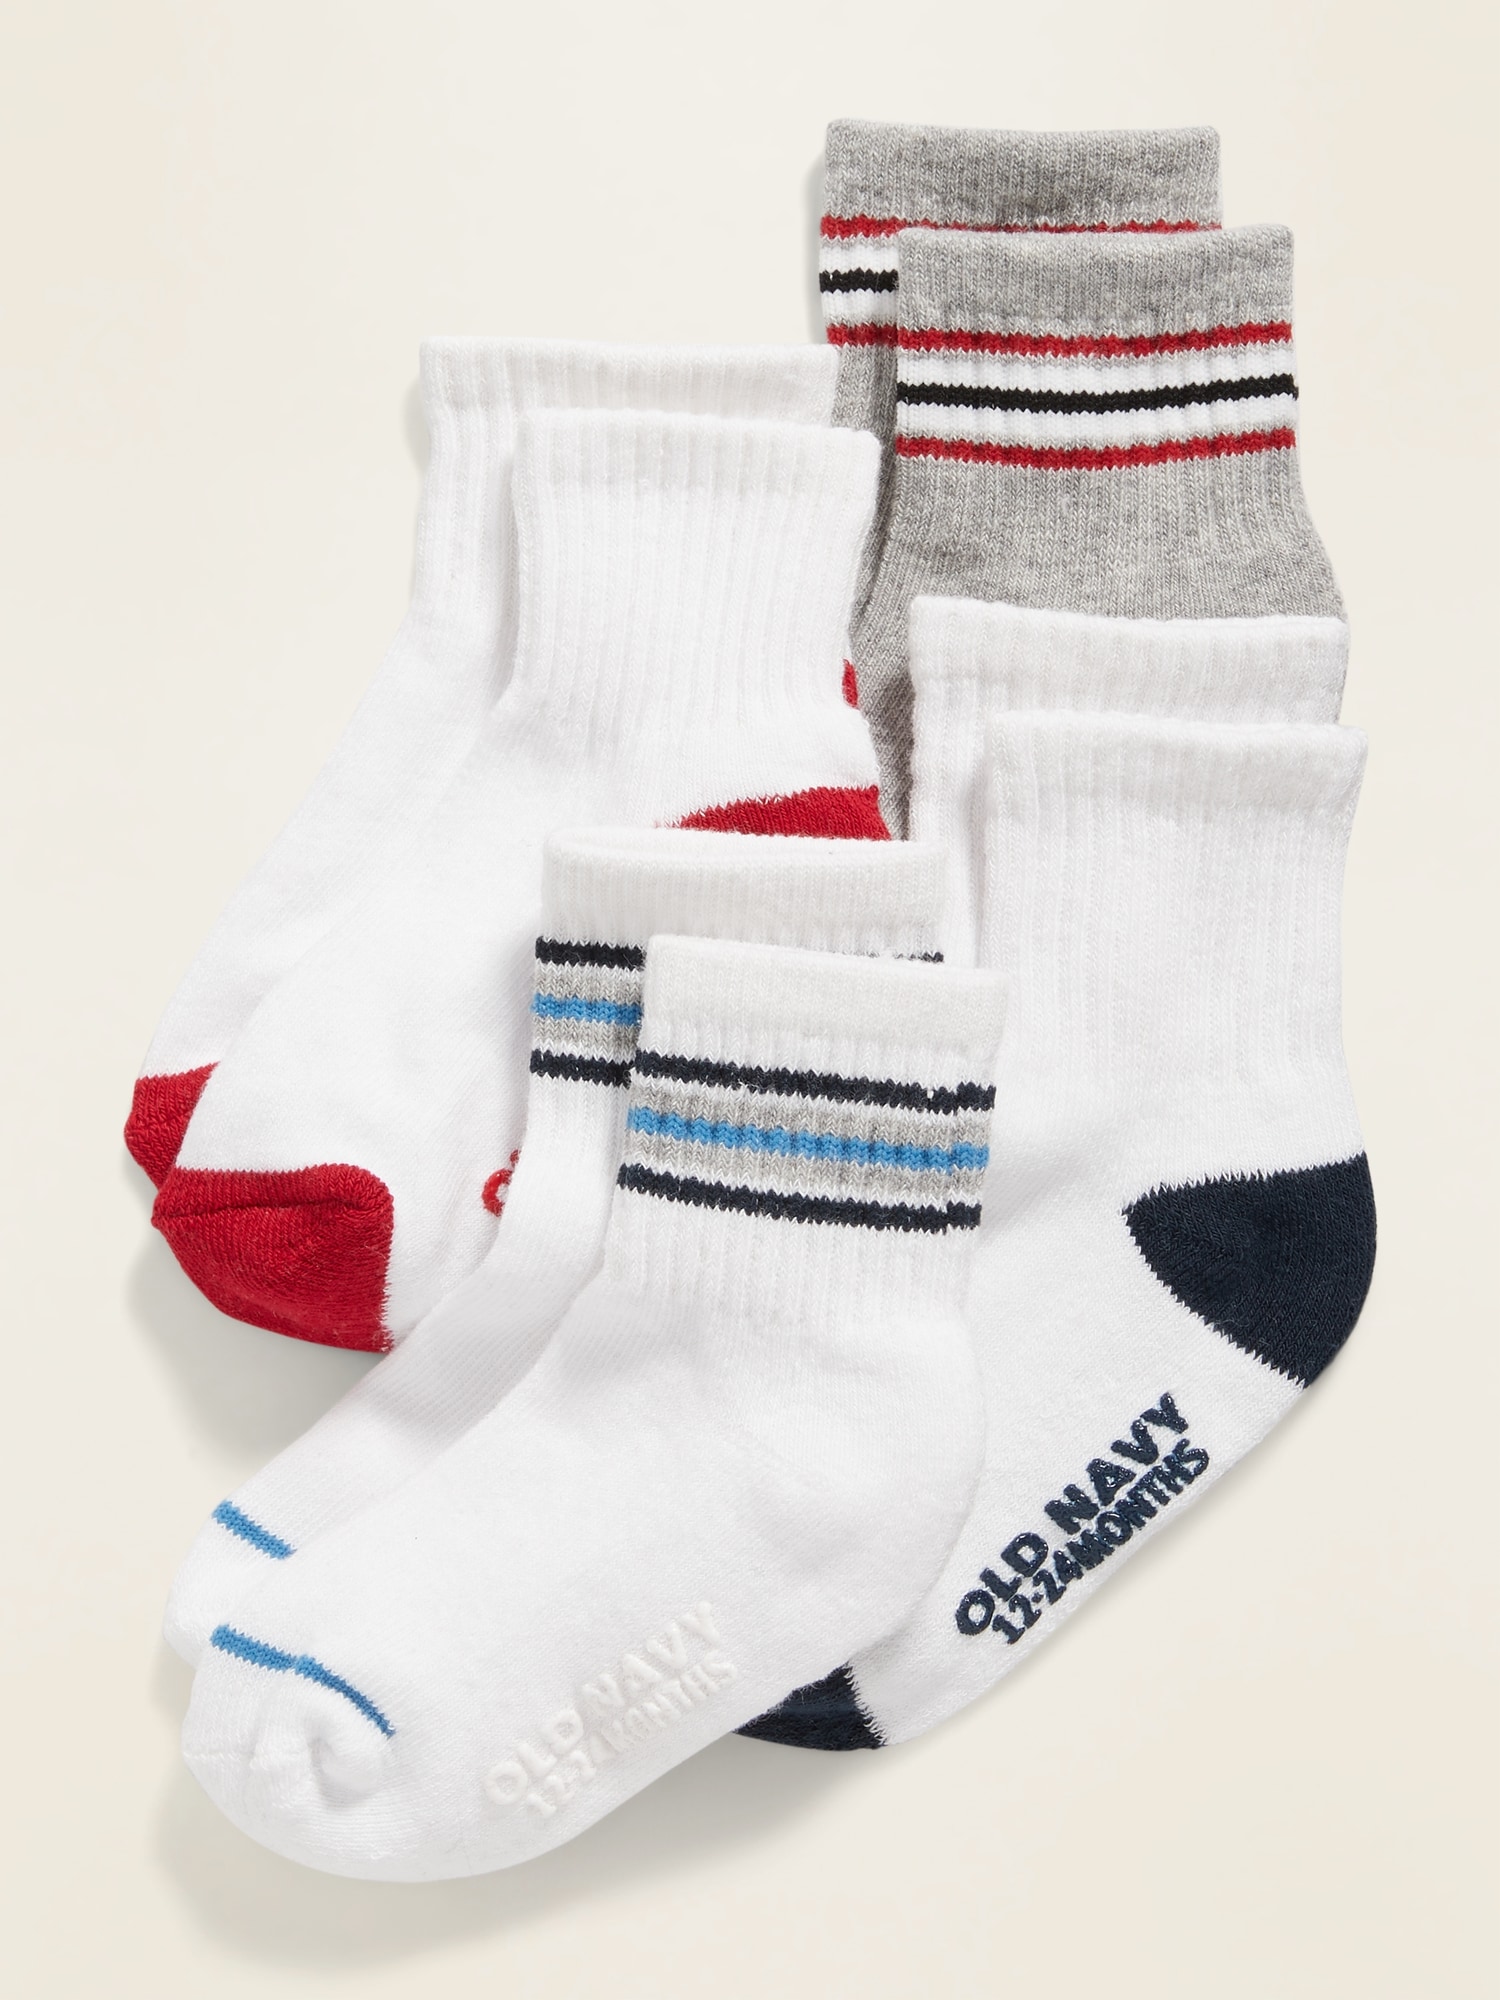 Unisex Sport Socks 4-Pack for Toddler & Baby